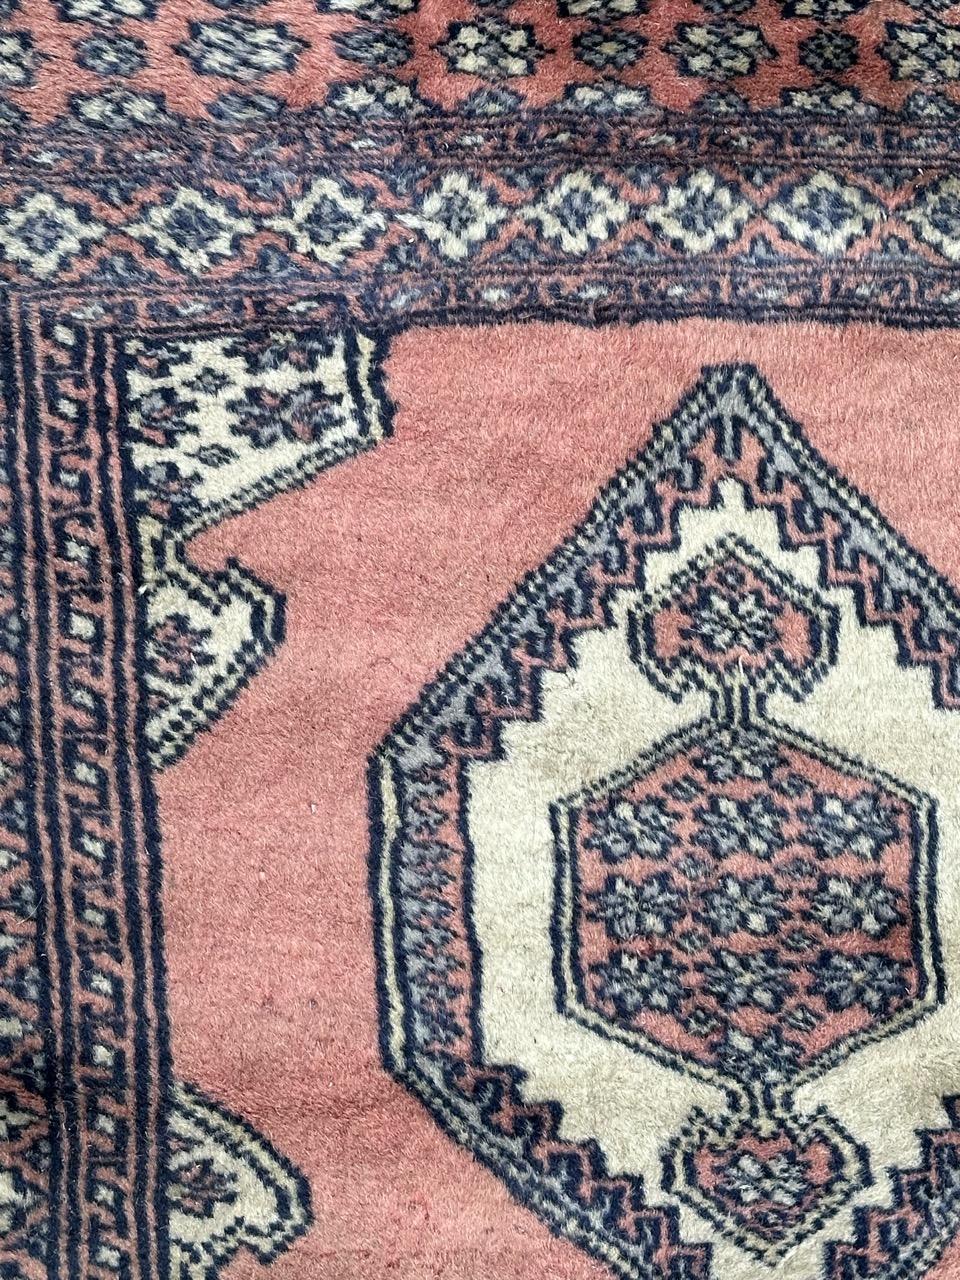 Joli petit tapis pakistanais vintage carré avec un joli Design/One géométrique dans le style des tapis turkmènes, et de belles couleurs avec un champ rose, bleu gris, blanc et noir, entièrement et finement noué à la main avec de la laine sur une